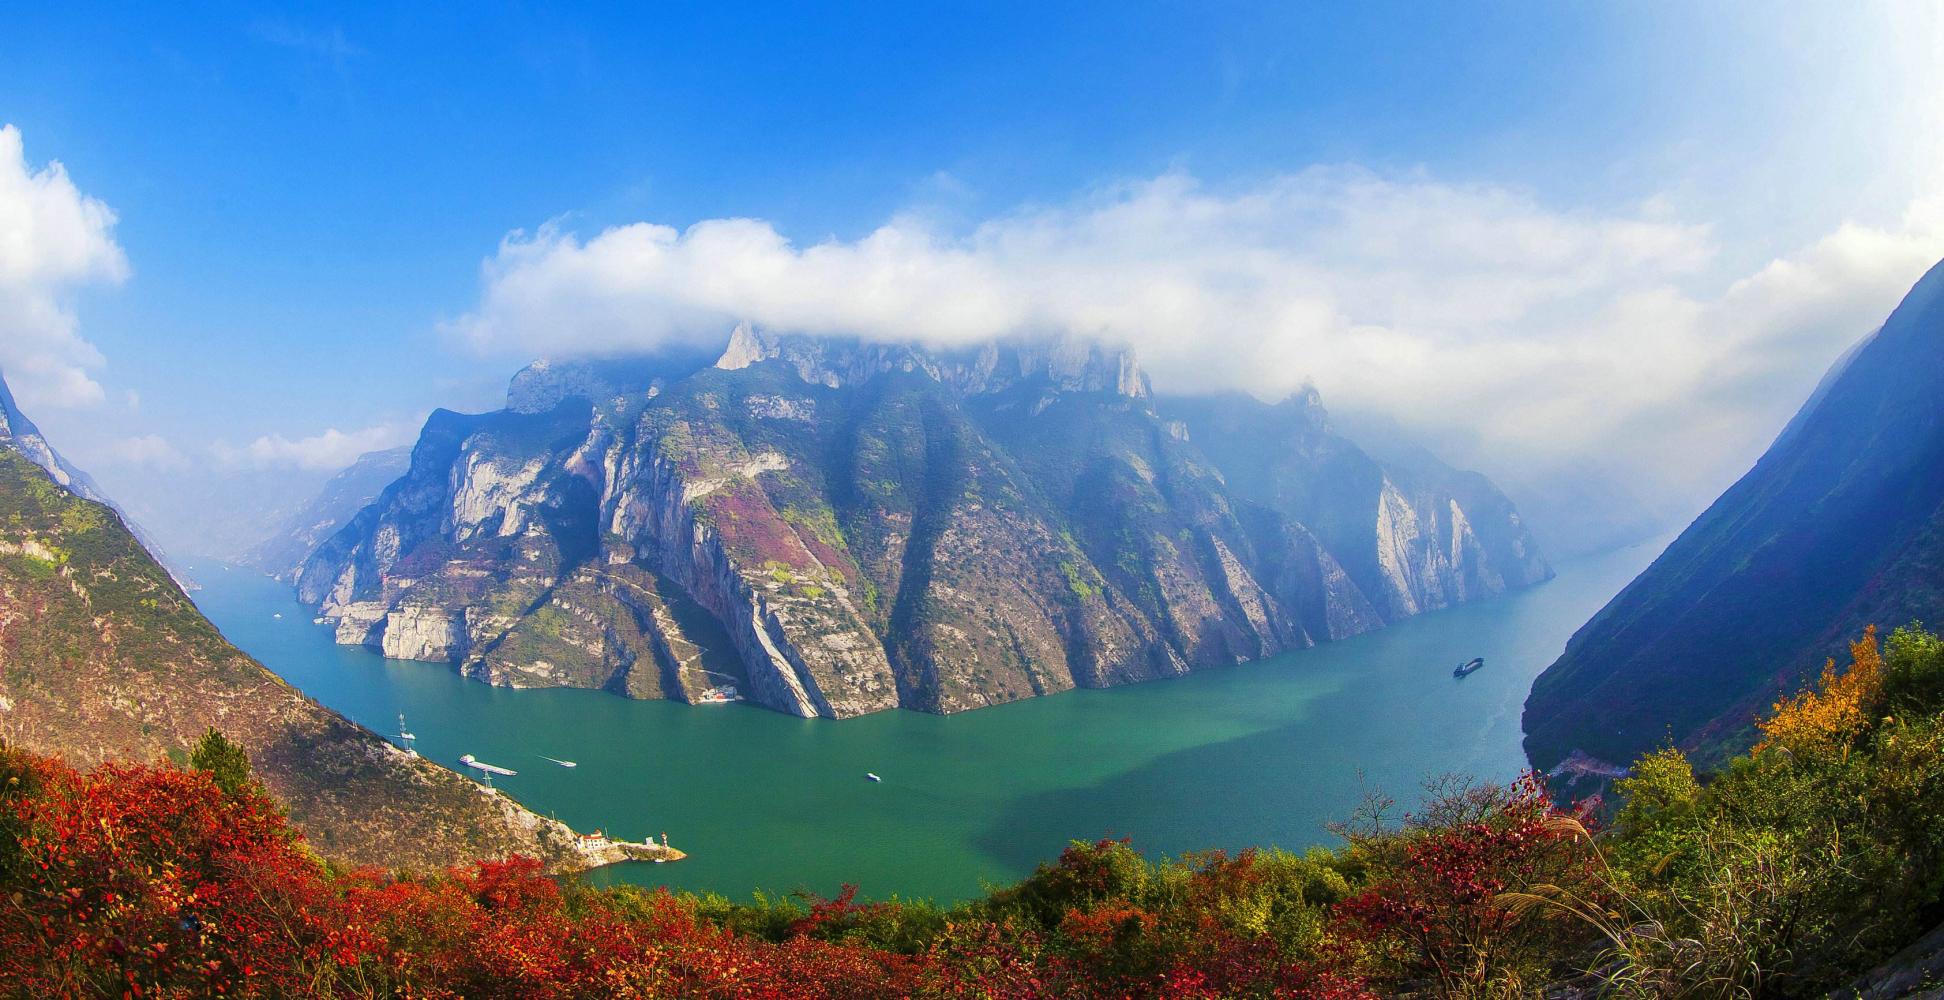 一幅巨大的天然山水画卷——长江三峡